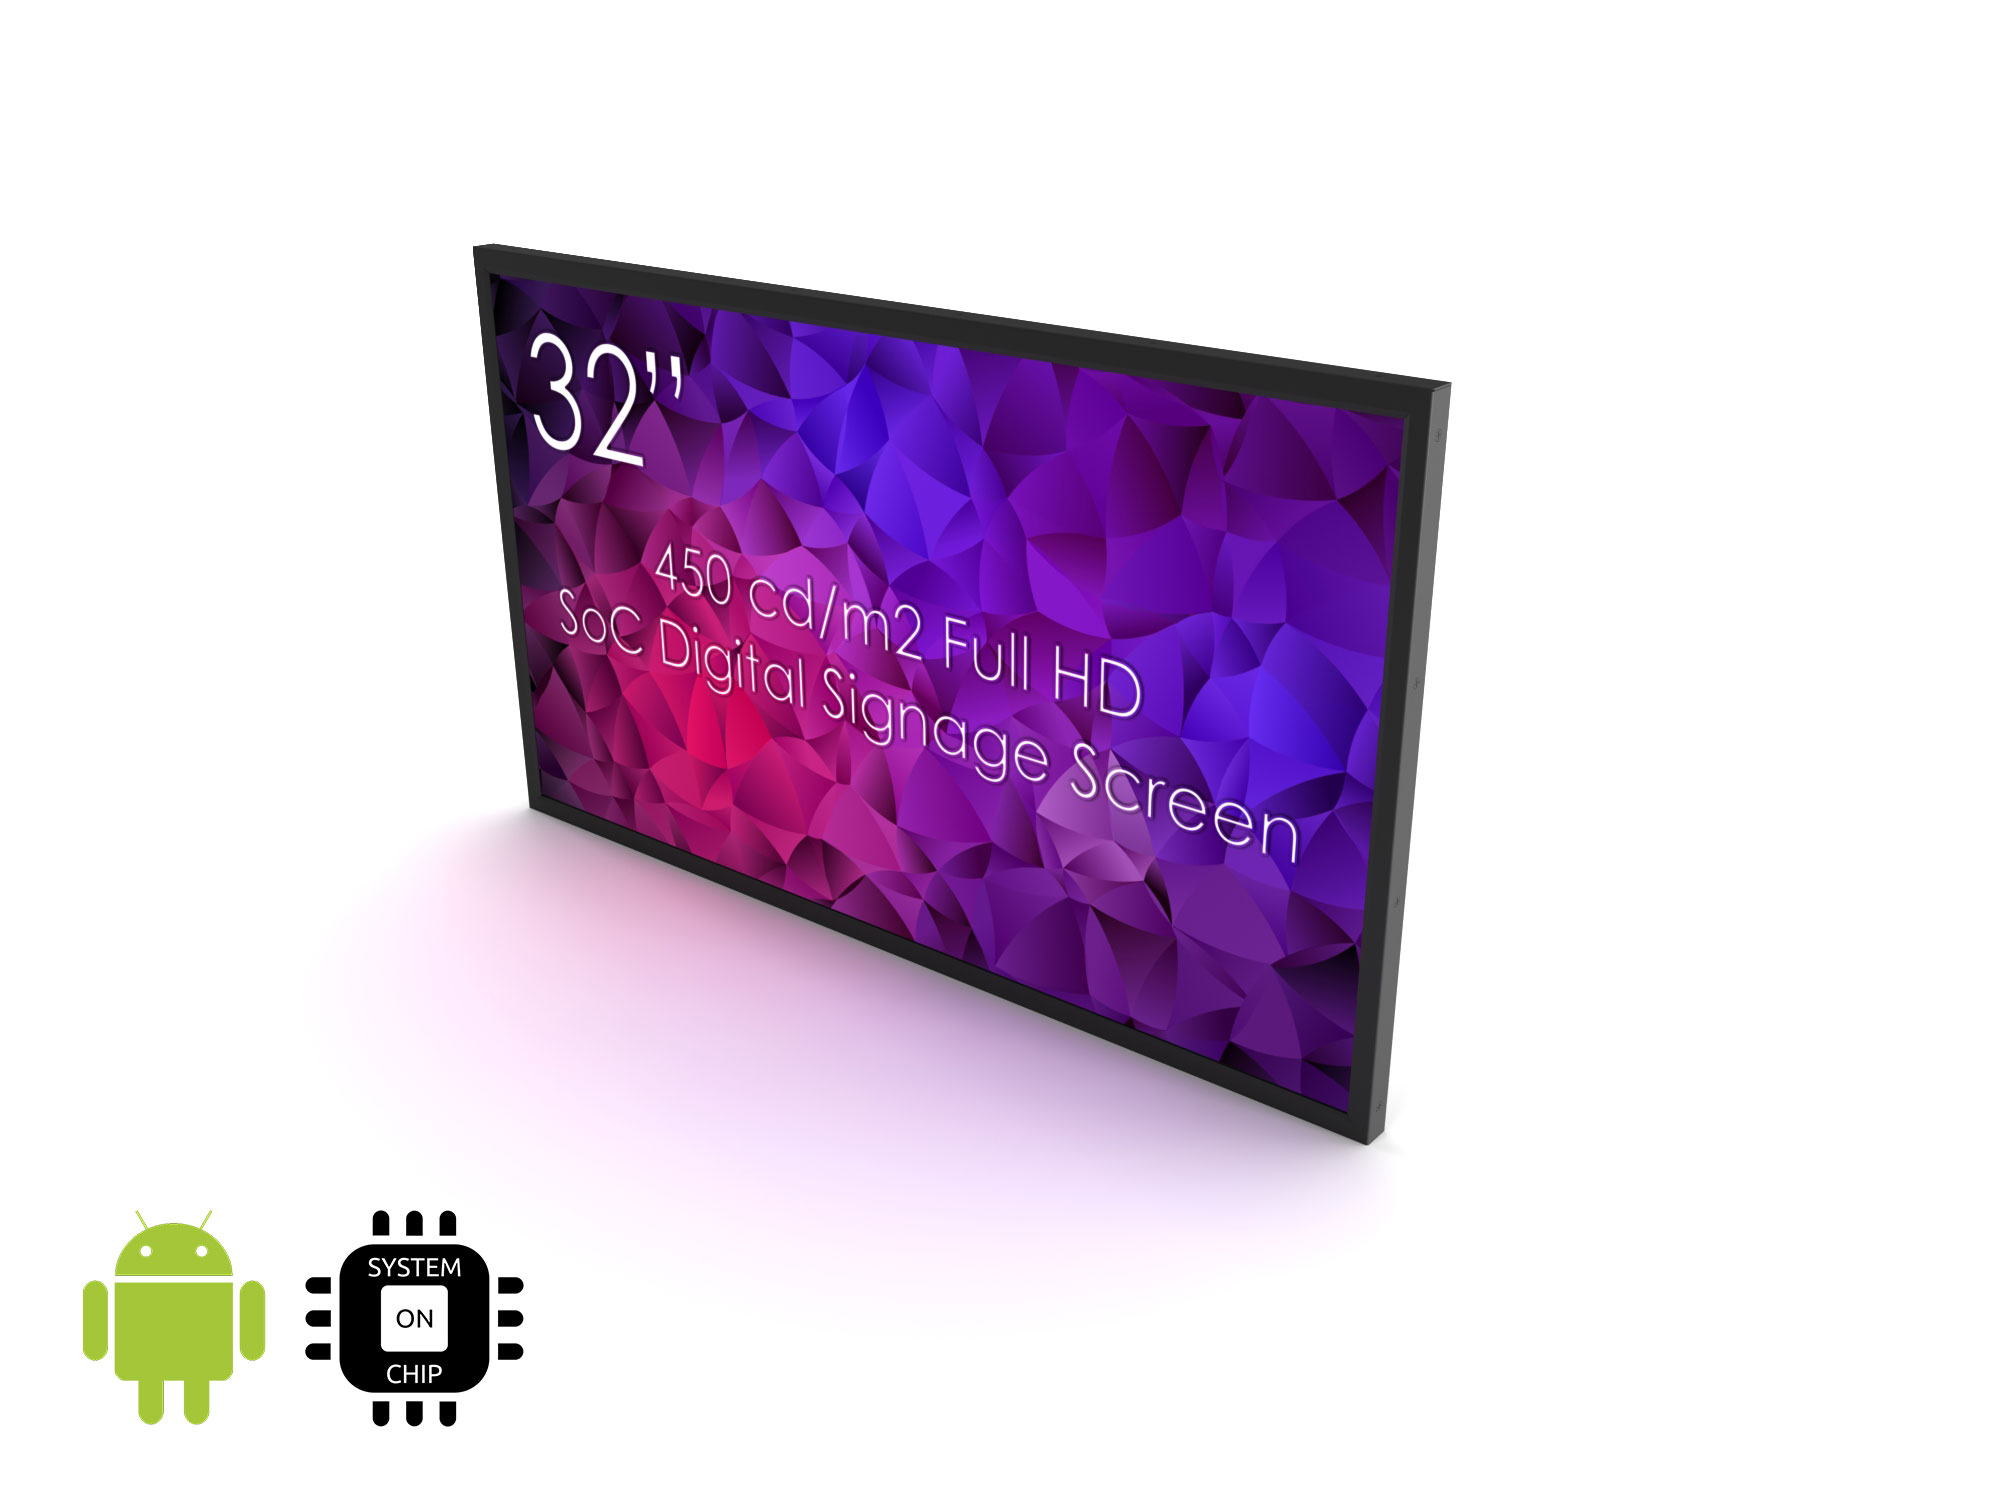 SWEDX 32\" Digital Signage screen / 450 cd/m2 / SoC